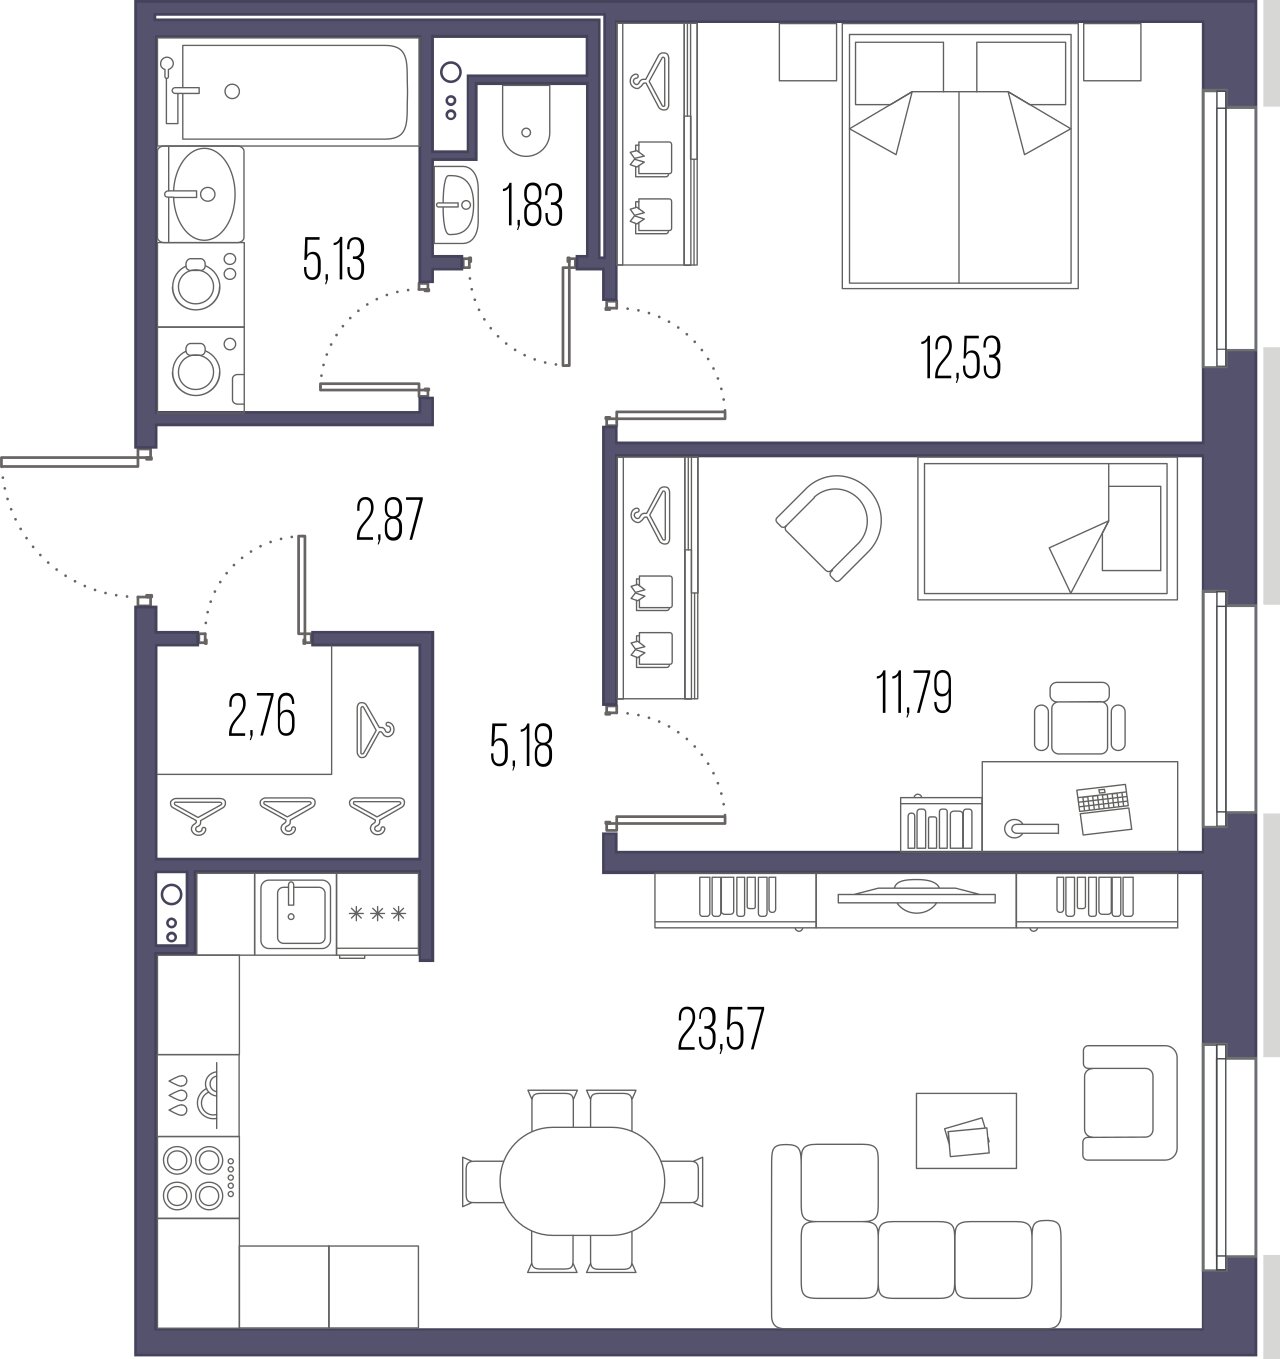 2-комнатная квартира  №333 в Svetlana Park: 65.66 м², этаж 9 - купить в Санкт-Петербурге